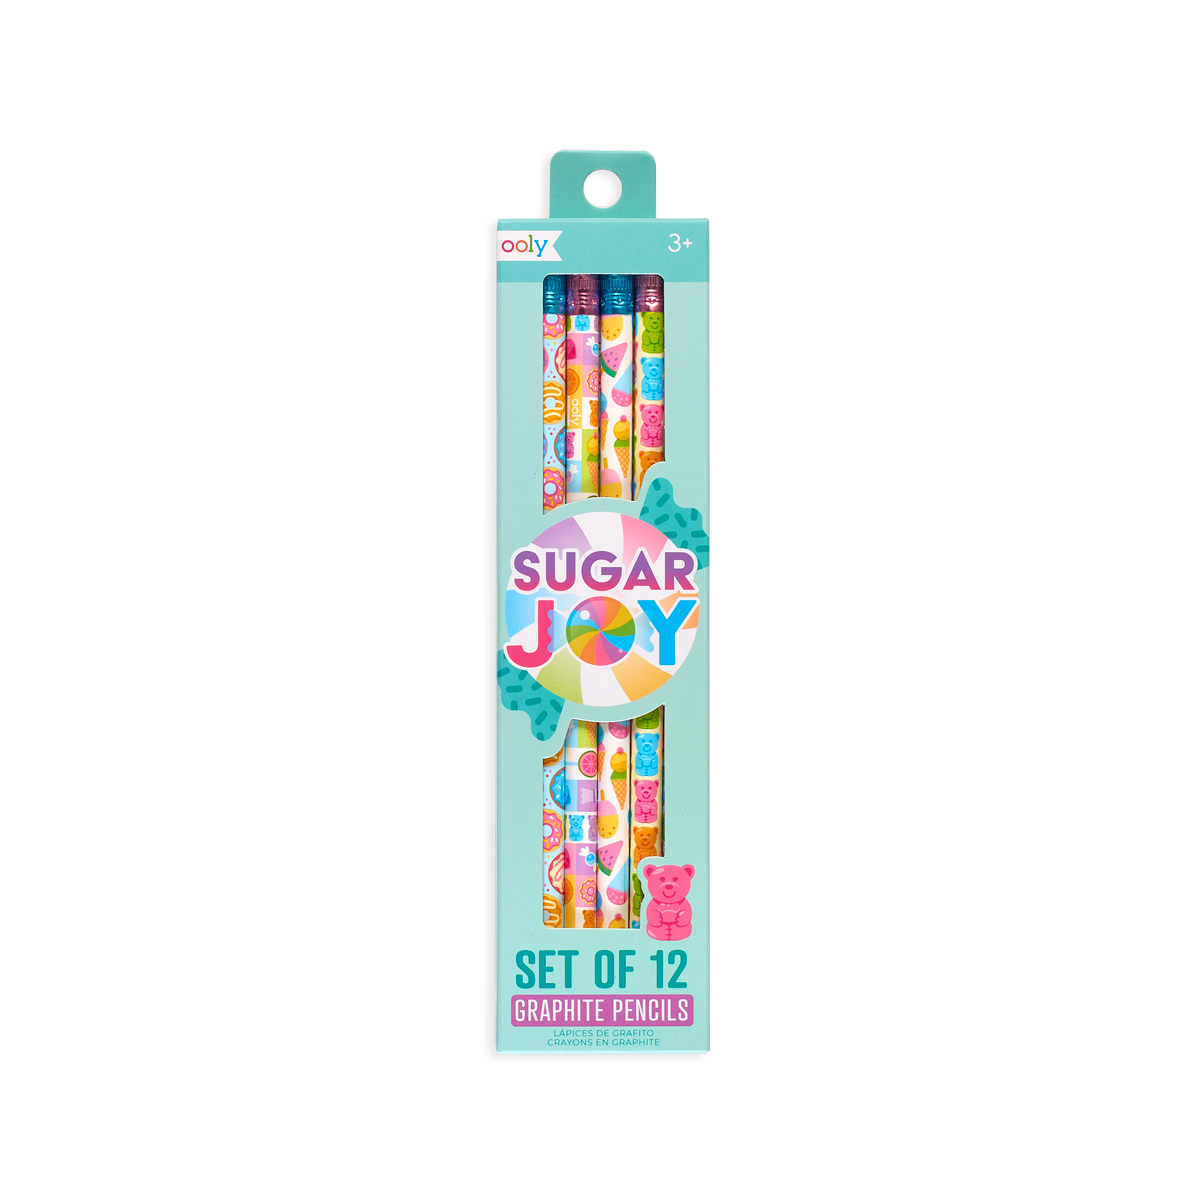 OOLY Sugar Joy graphite pencils in packaging